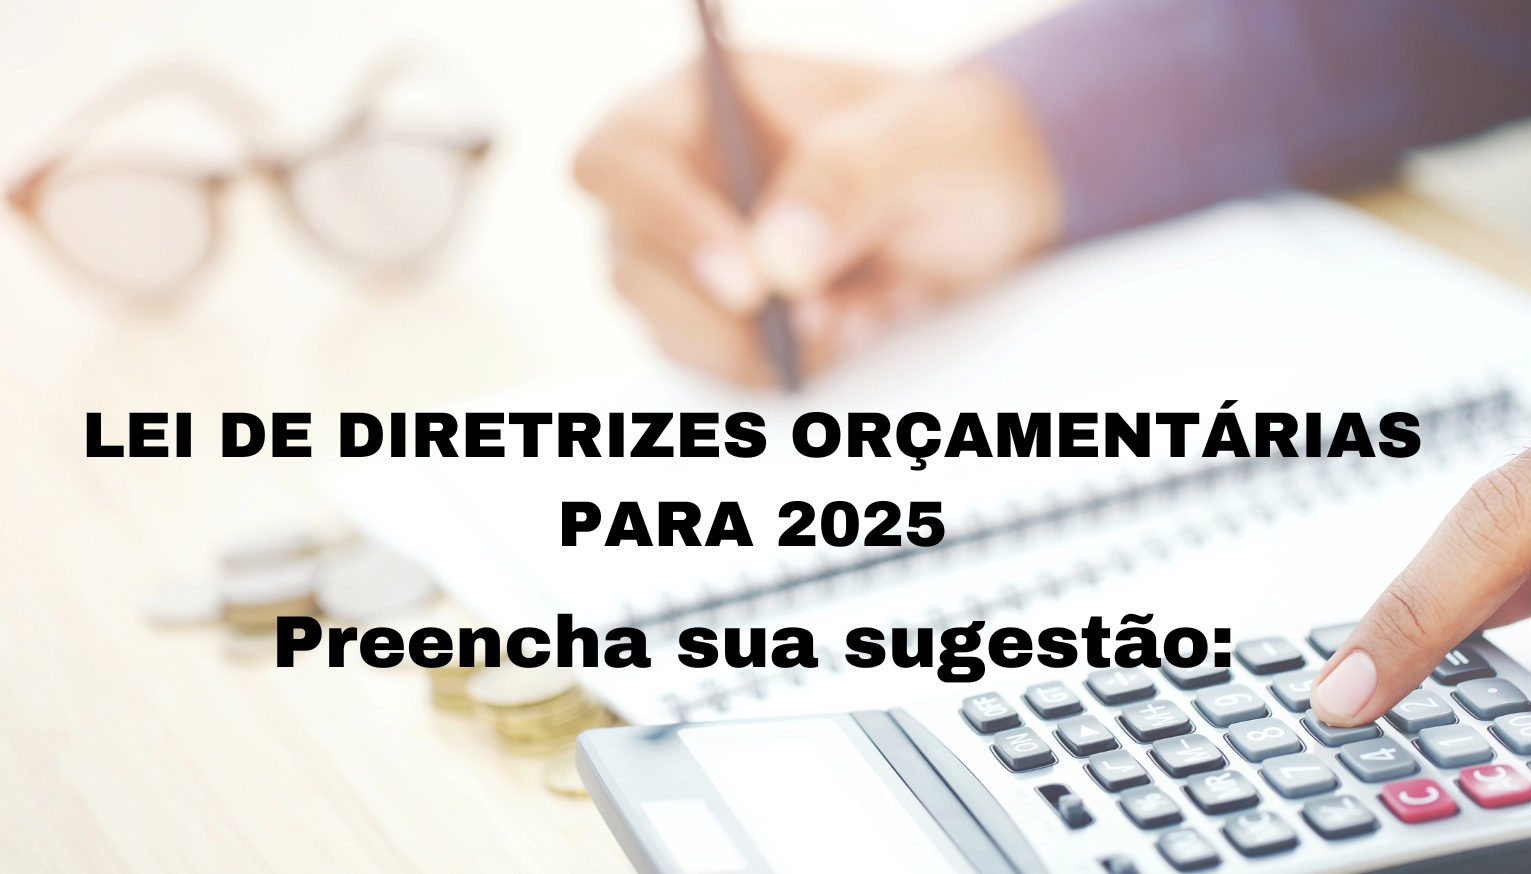 LEI DE DIRETRIZES ORÇAMENTÁRIAS PARA 2025